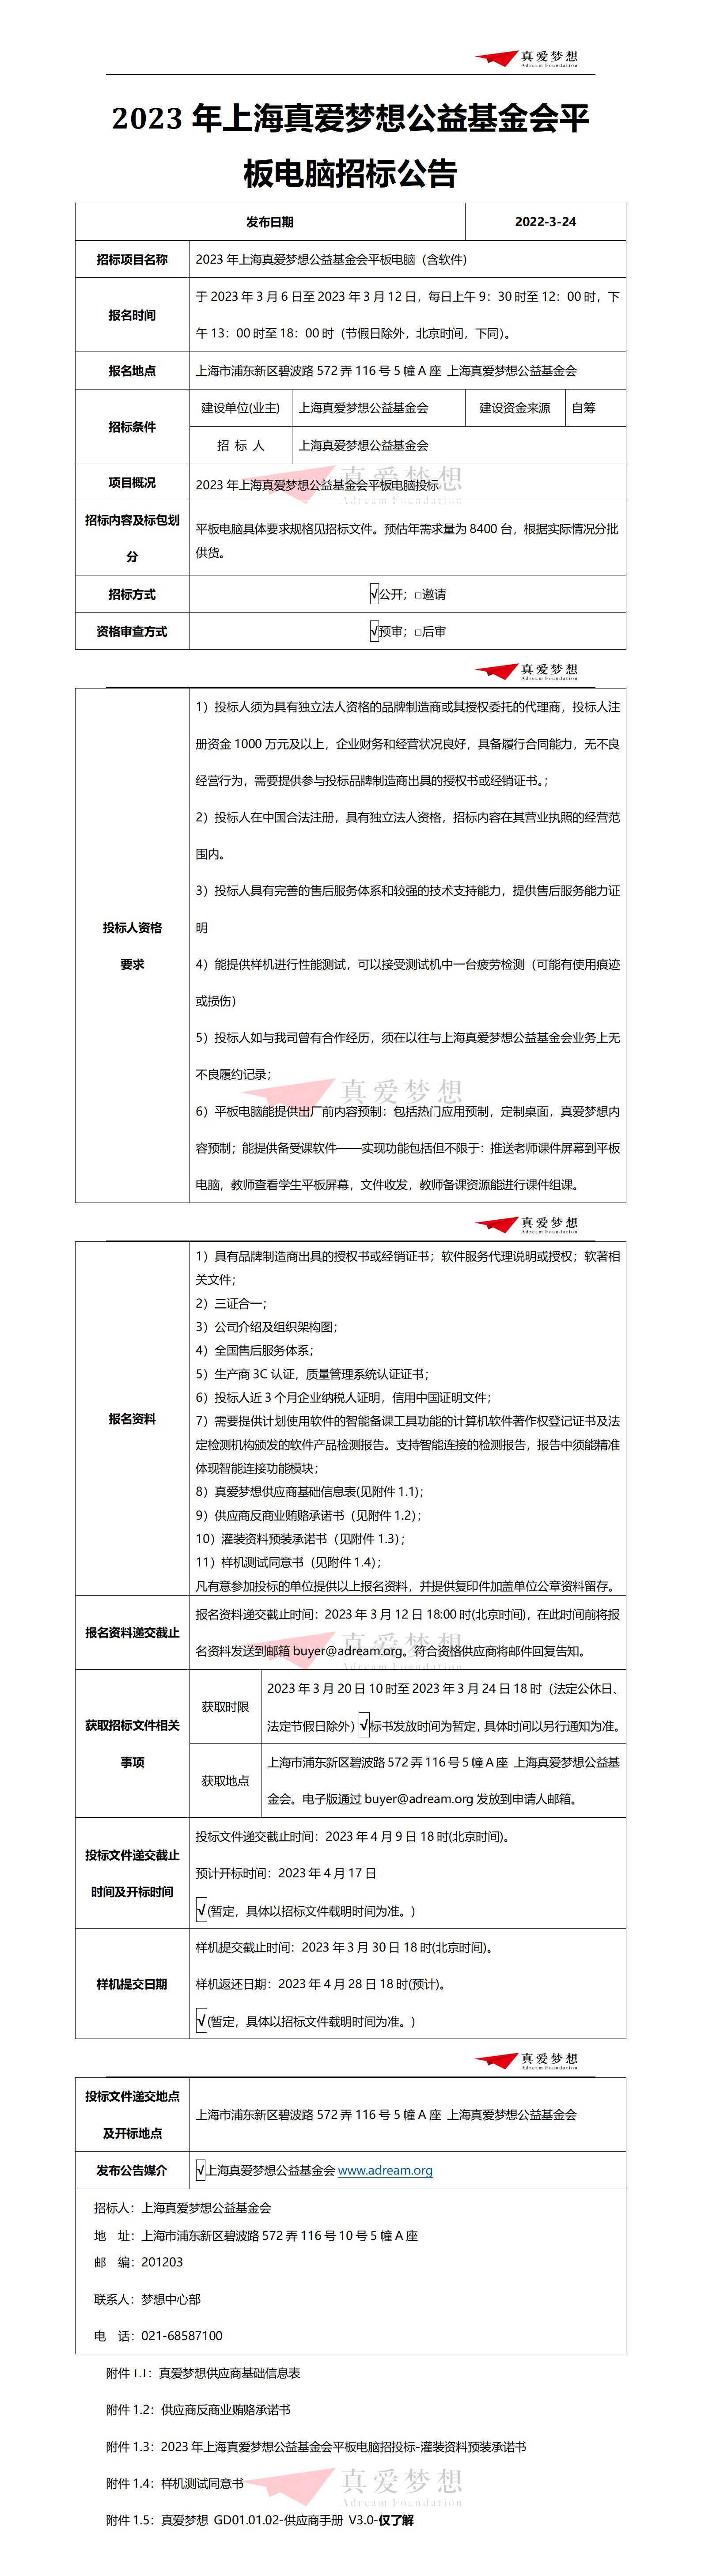 1.招标公告-2023年上海真爱梦想公益基金会平板电脑_01